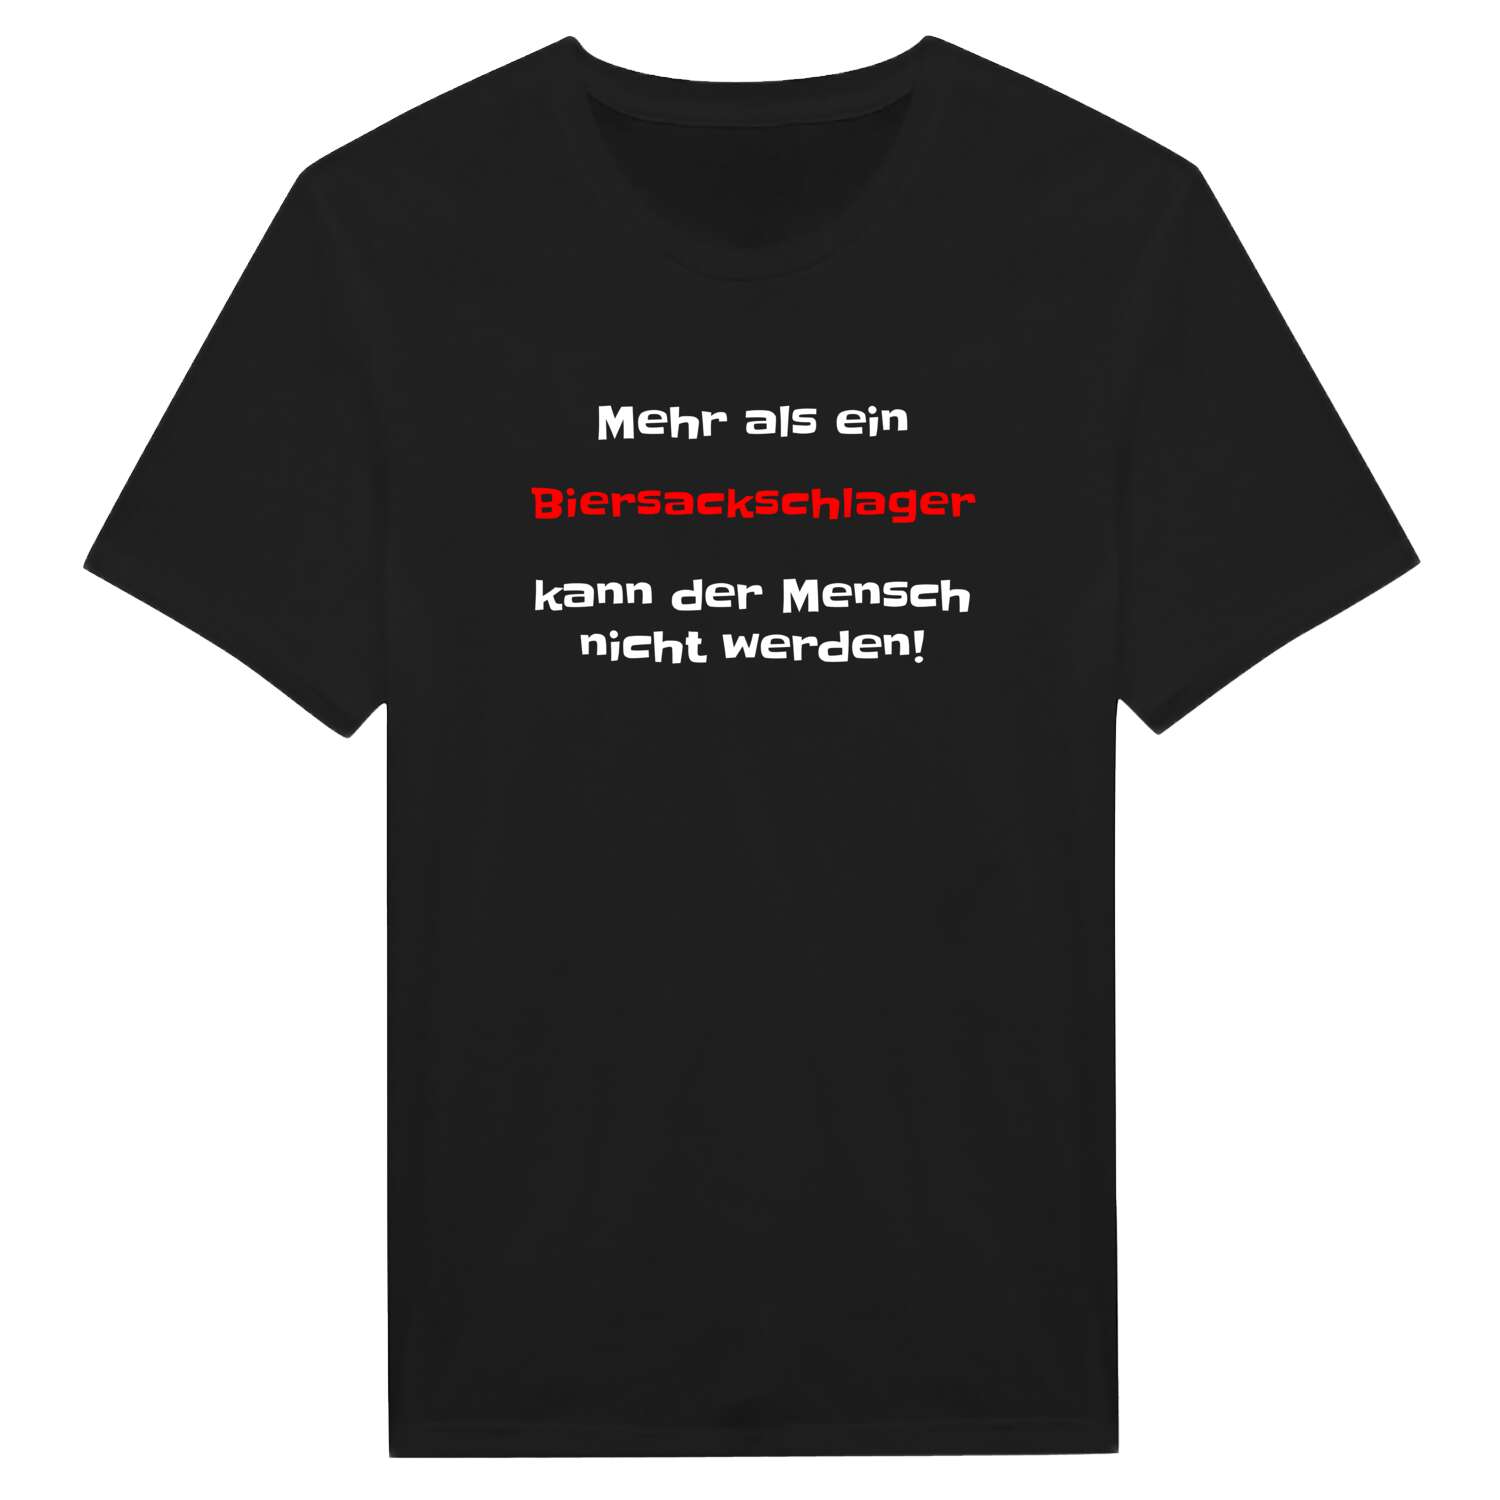 Biersackschlag T-Shirt »Mehr als ein«